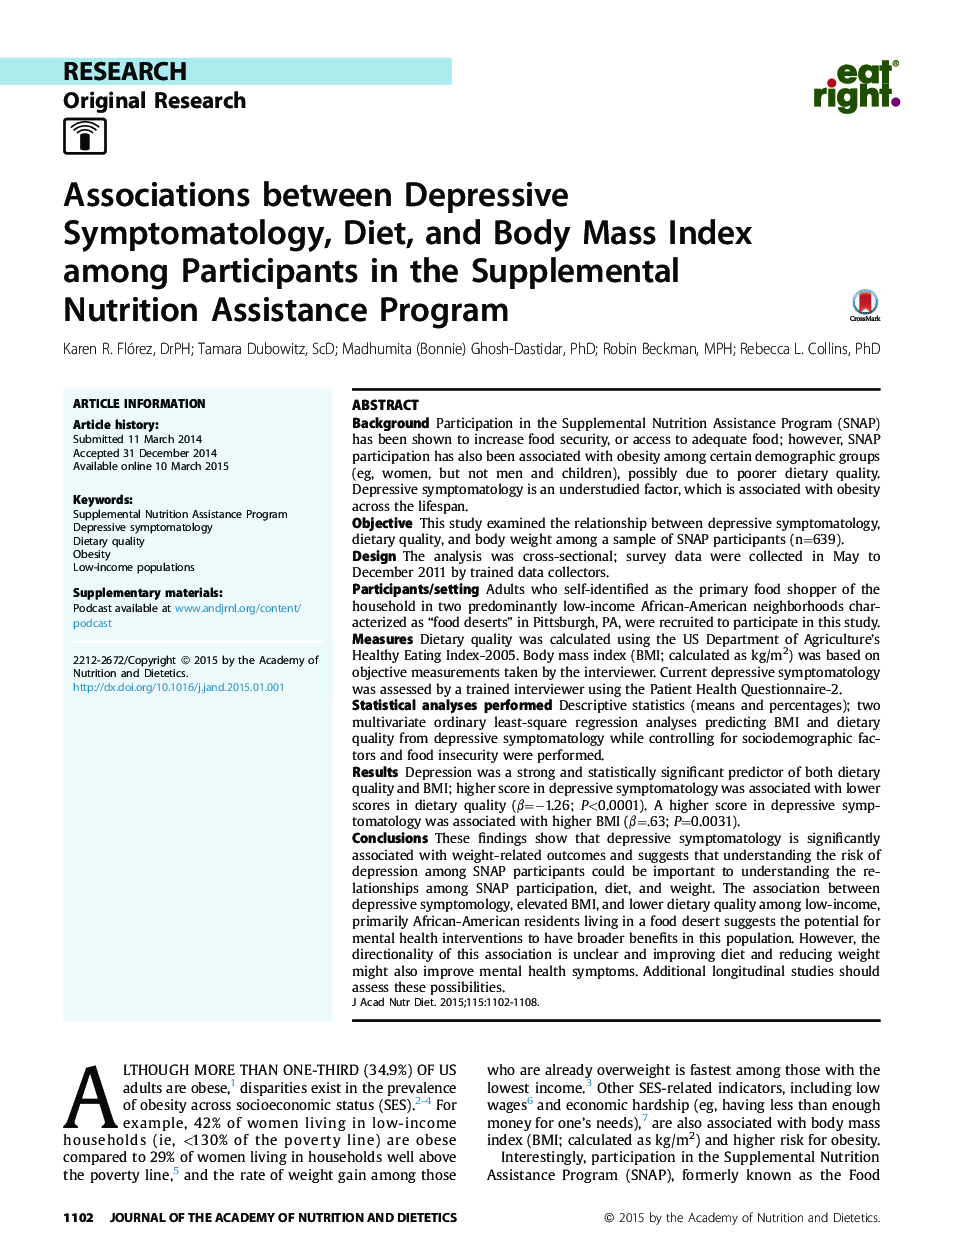 ارتباط بین علائم افسردگی، رژیم غذایی و شاخص توده بدنی در میان شرکت کنندگان در برنامه کمک تغذیه تکمیلی